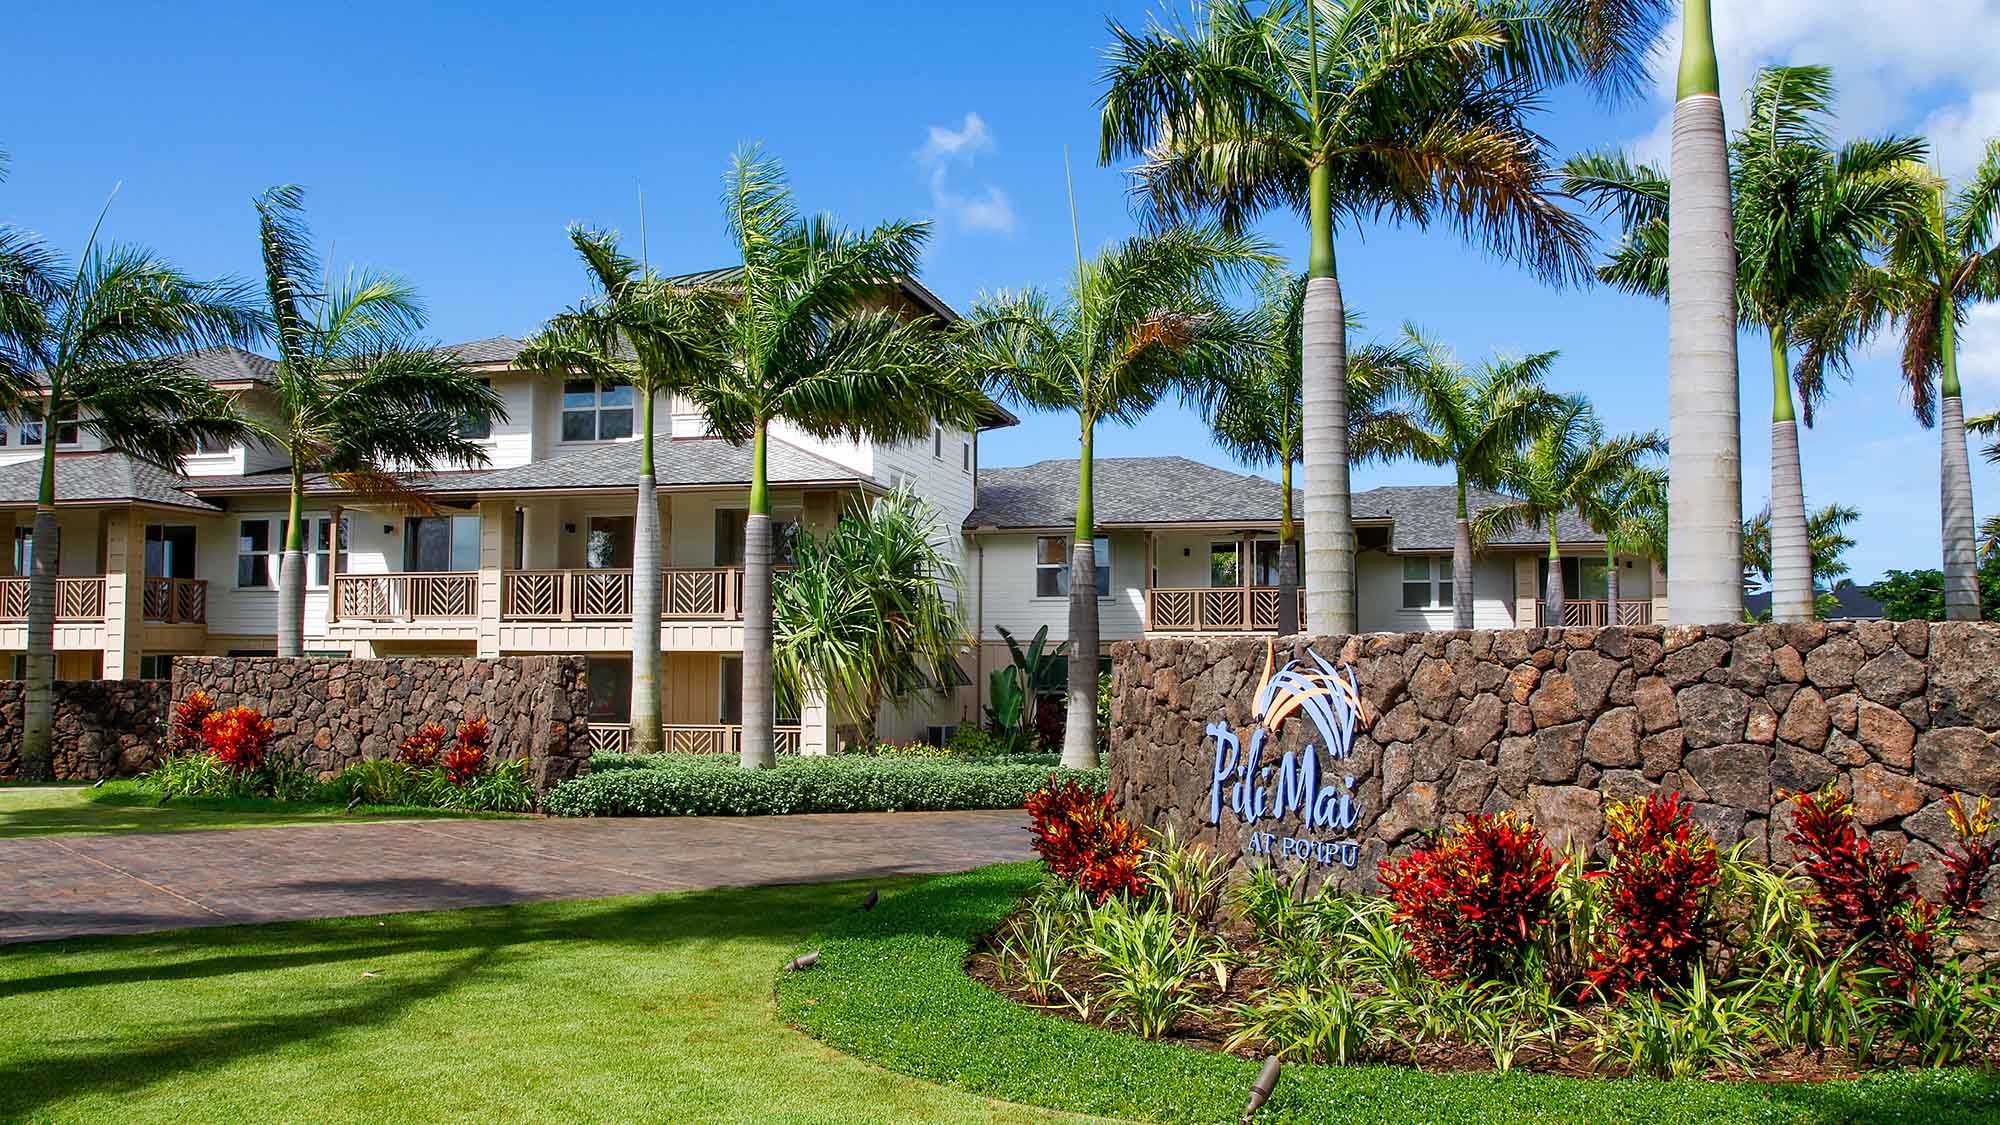 Pili Mai Resort at Poipu 2 - Parrish Kauai